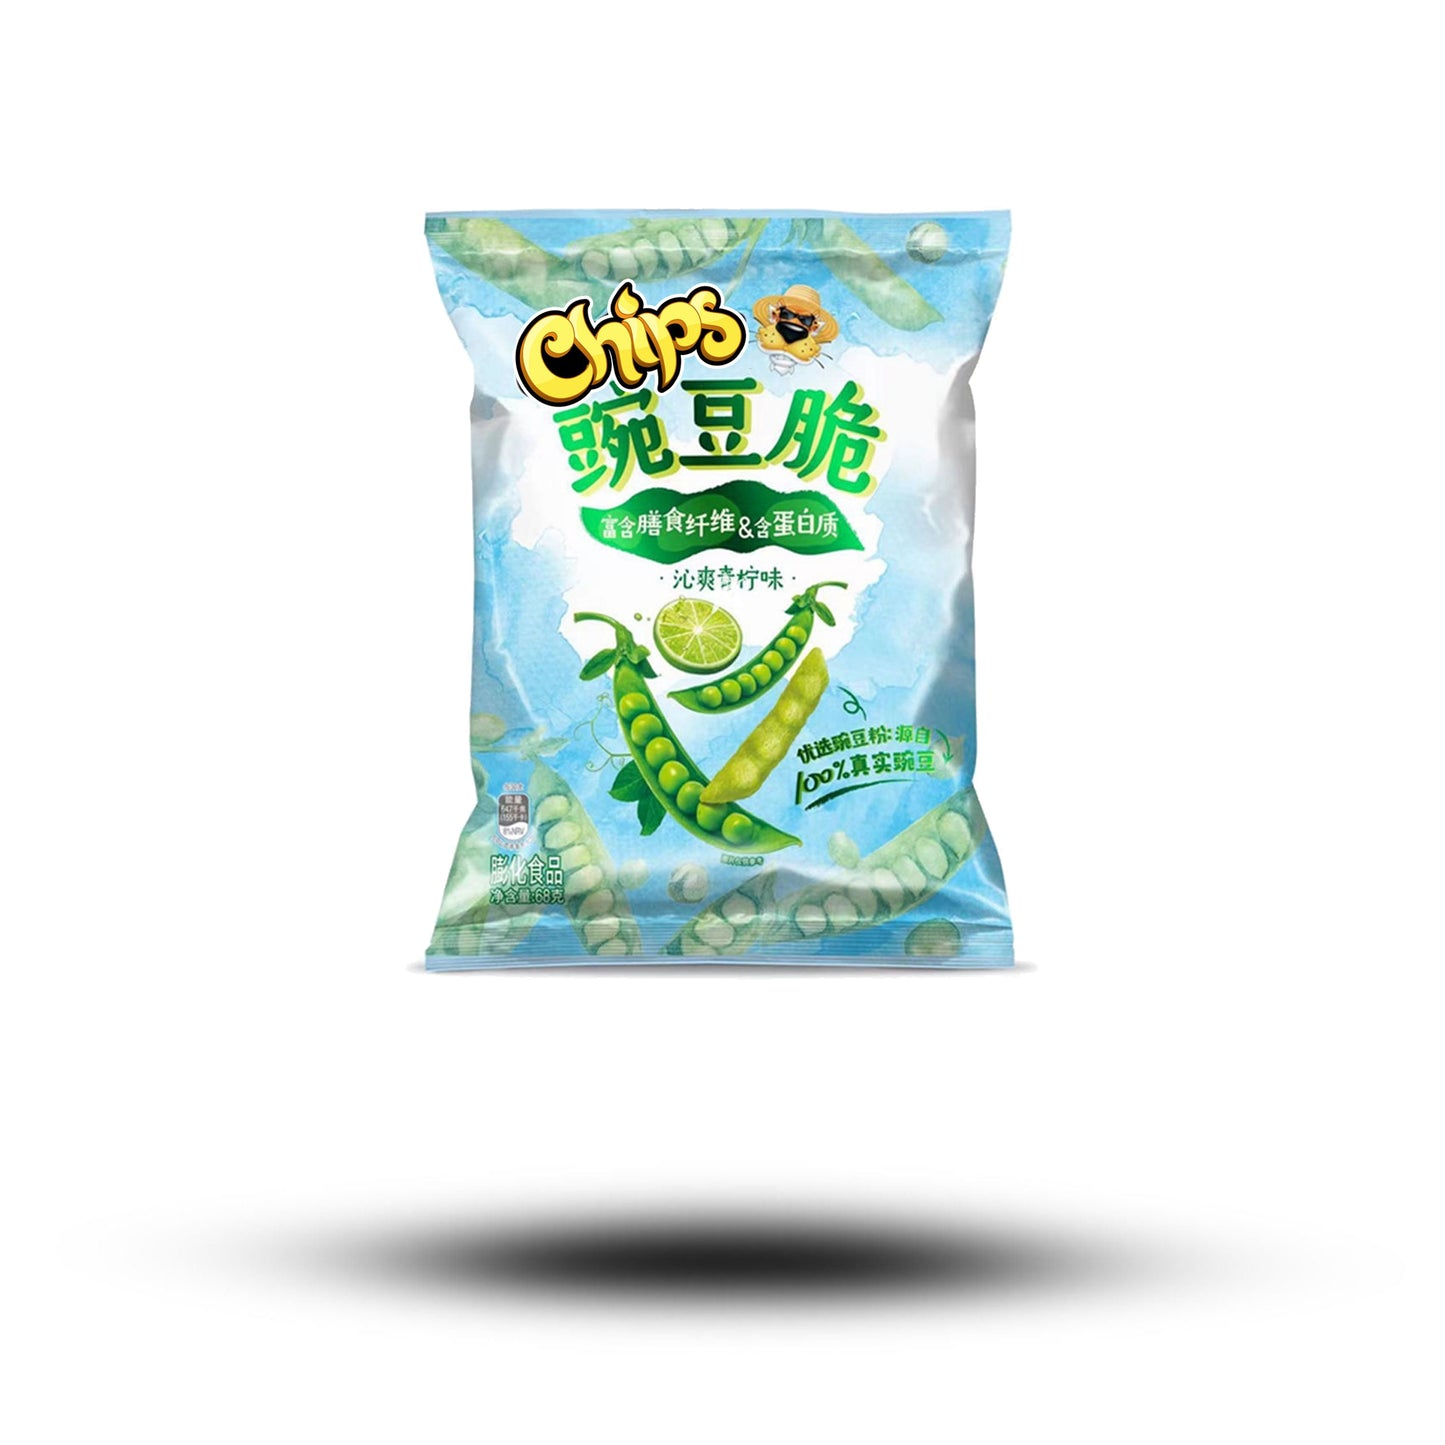 Chips Peas Crisp Lime 68g